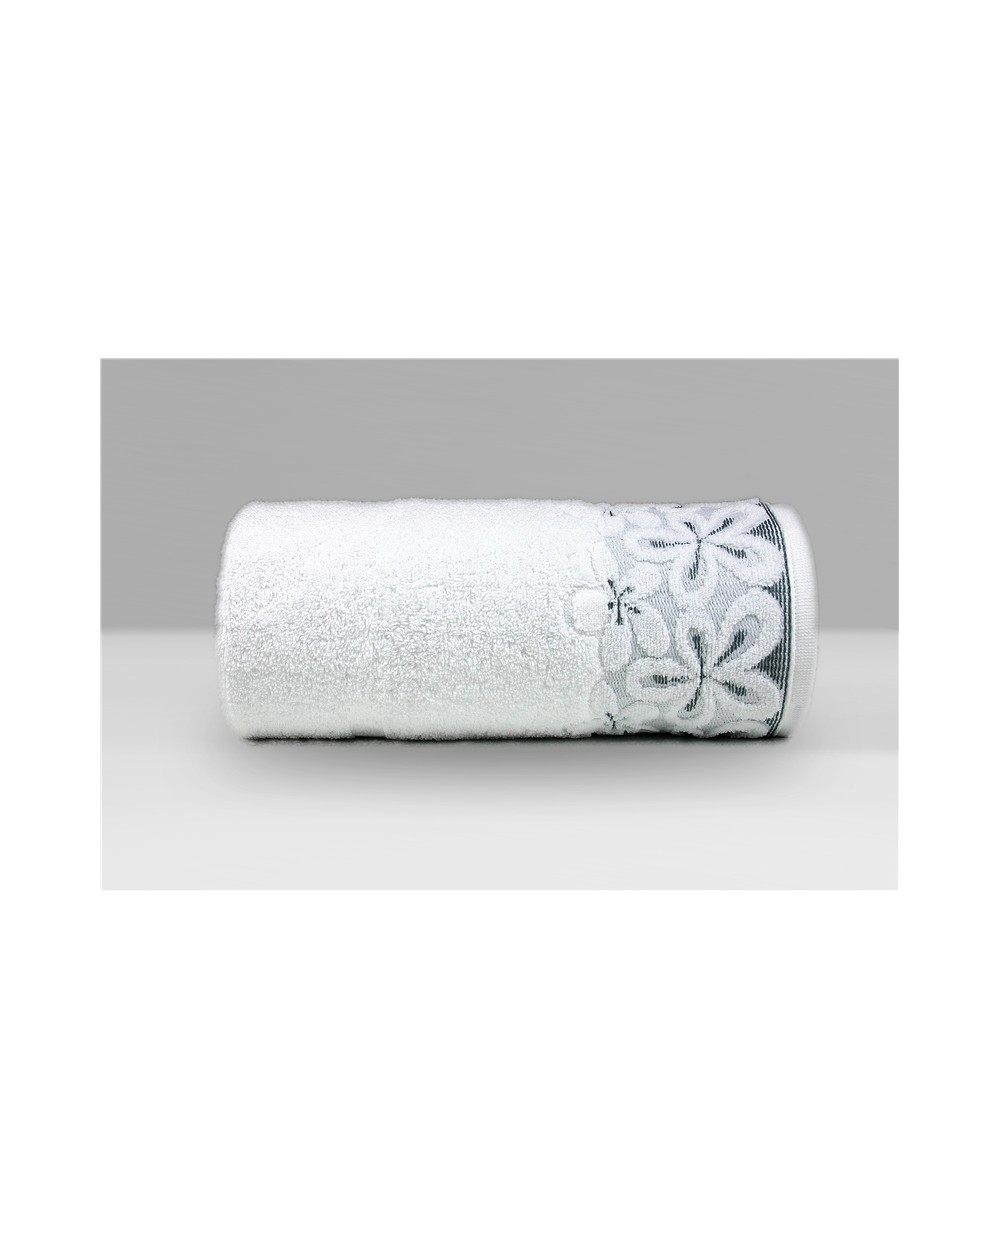 Ręcznik Bella mikrobawełna 30x50 biały